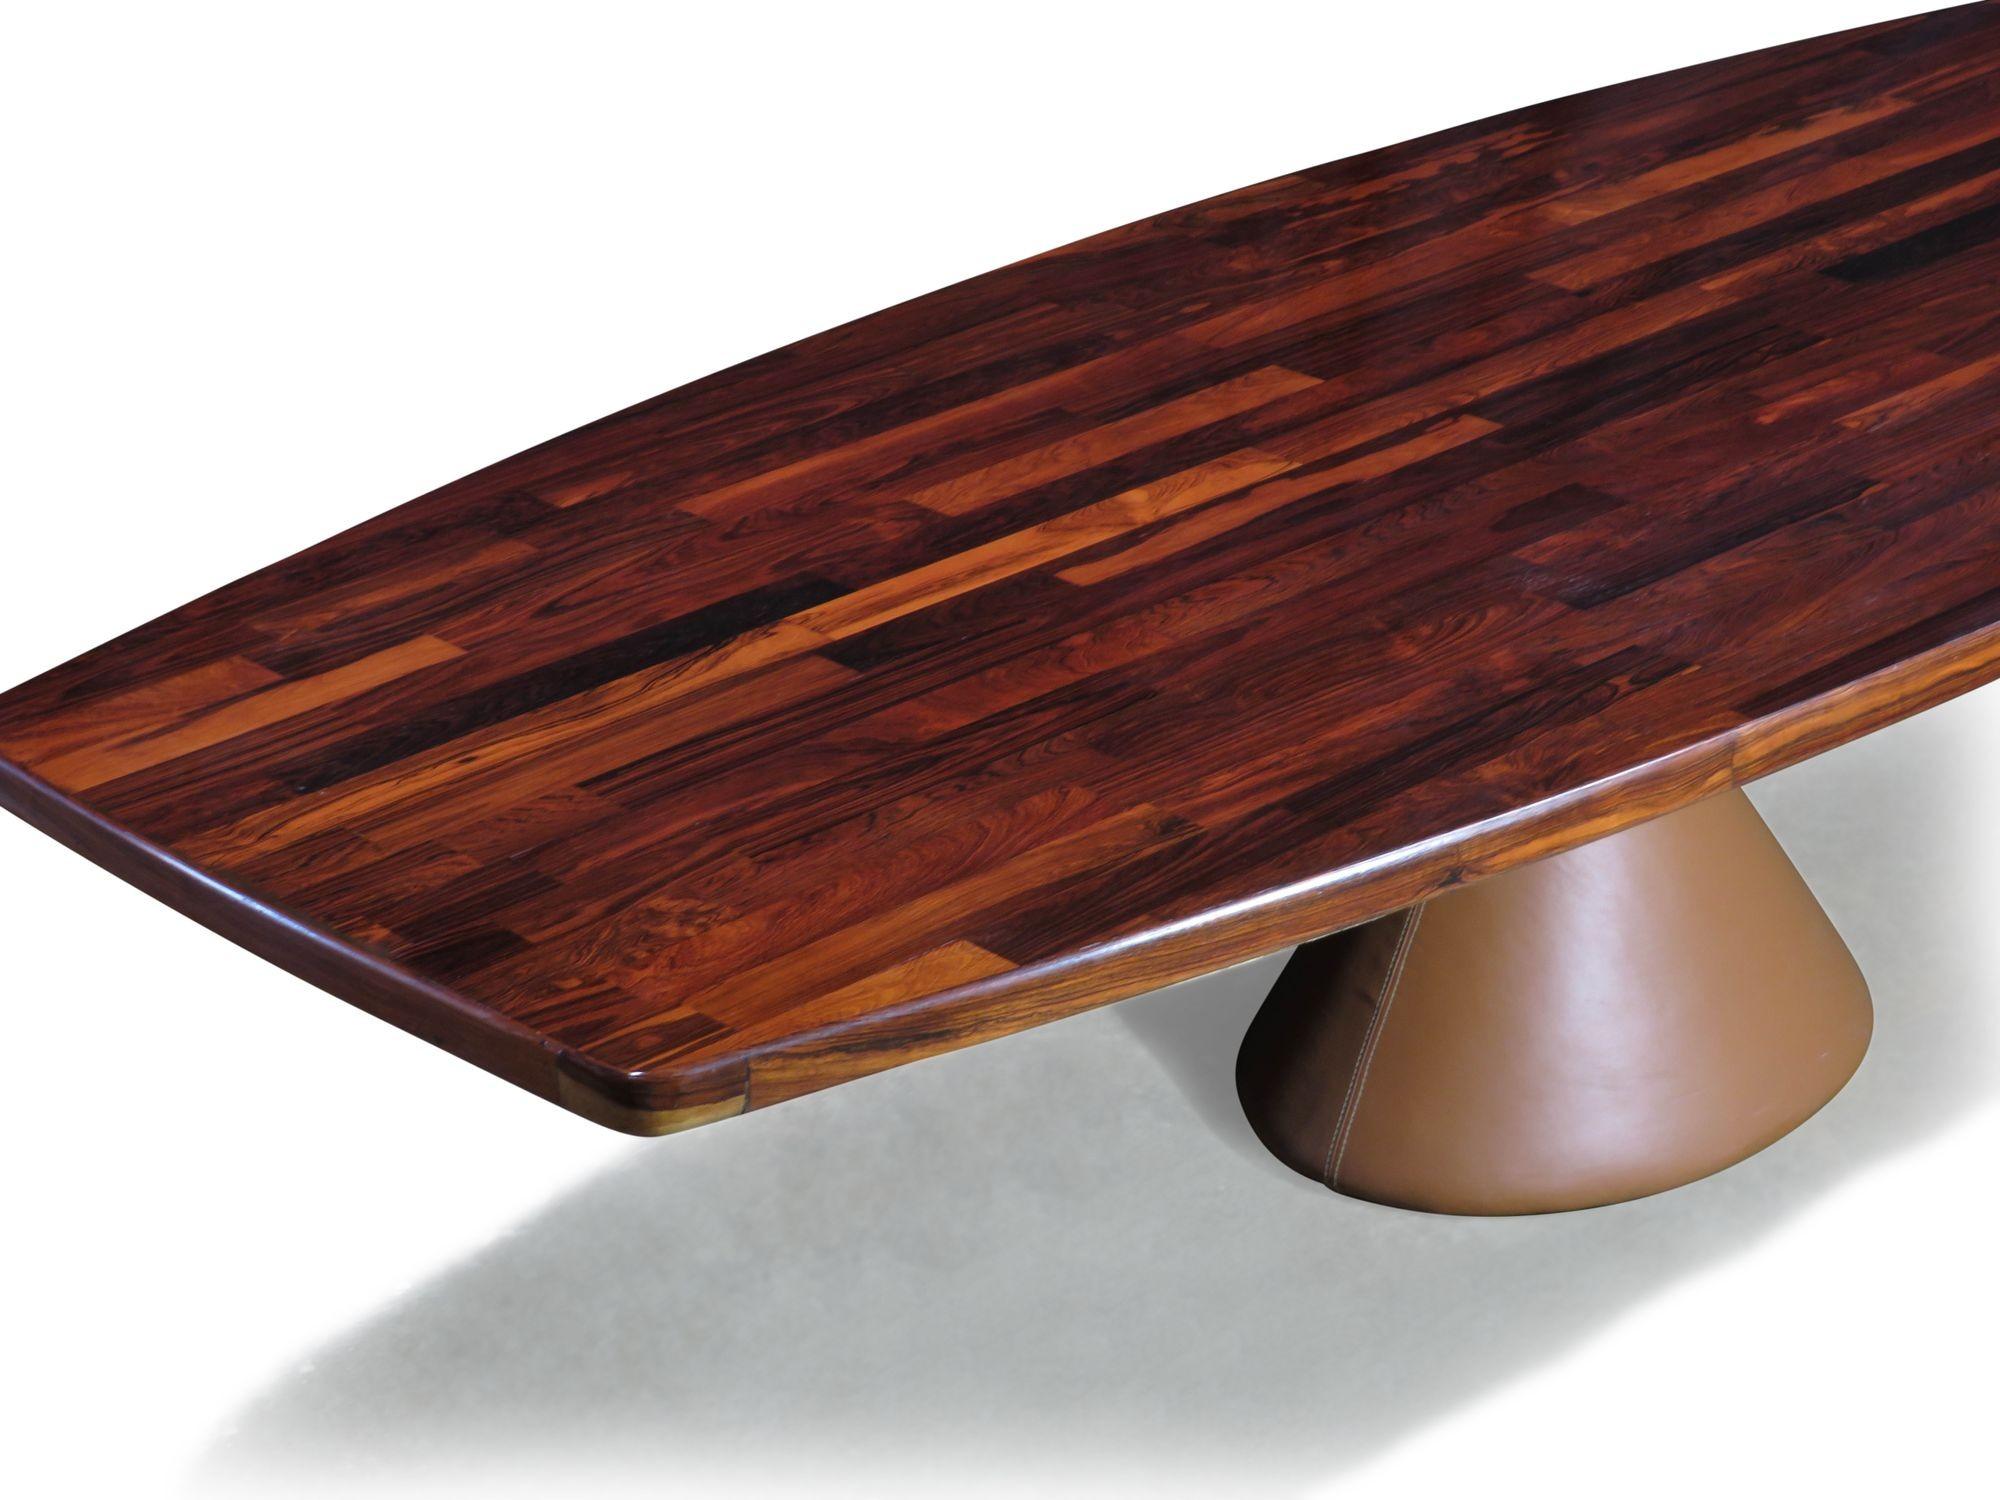 L'emblématique table Guanabara conçue par Jorge Zalszupin pour L'Atelier, 1959. Il est doté d'un impressionnant plateau en bois de rose en forme de bateau sur une base massive en béton recouverte d'un cuir de selle. Le plateau en patchwork présente